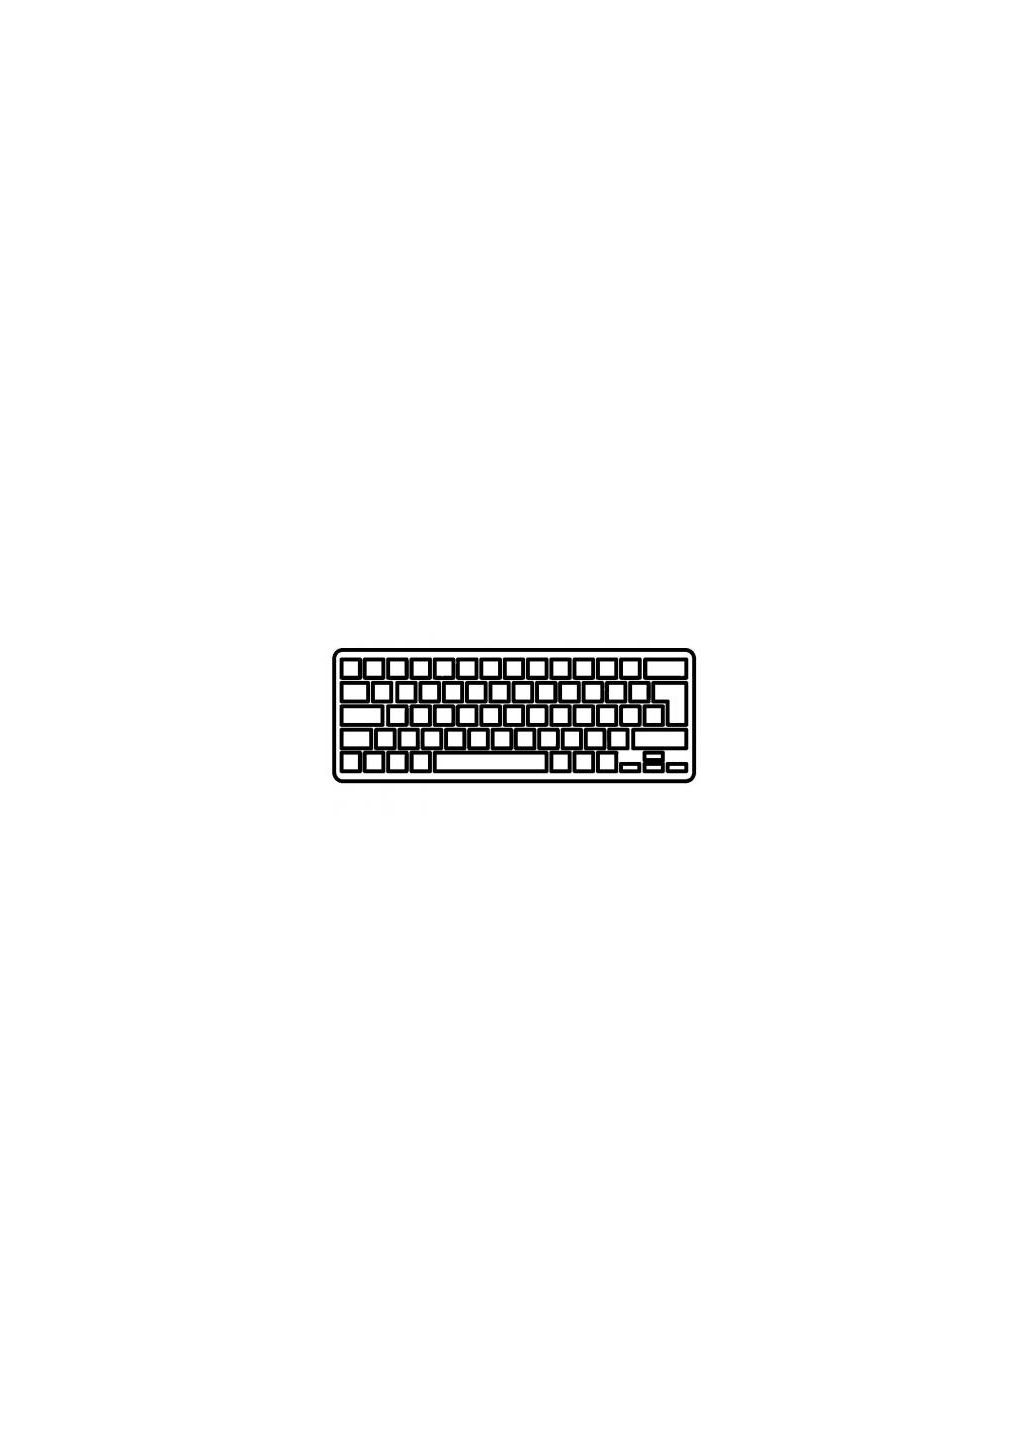 Клавиатура ноутбука Pavilion 17E Series белая с белой рамкой RU (A43898) HP pavilion 17-e series белая с белой рамкой ru (276707685)